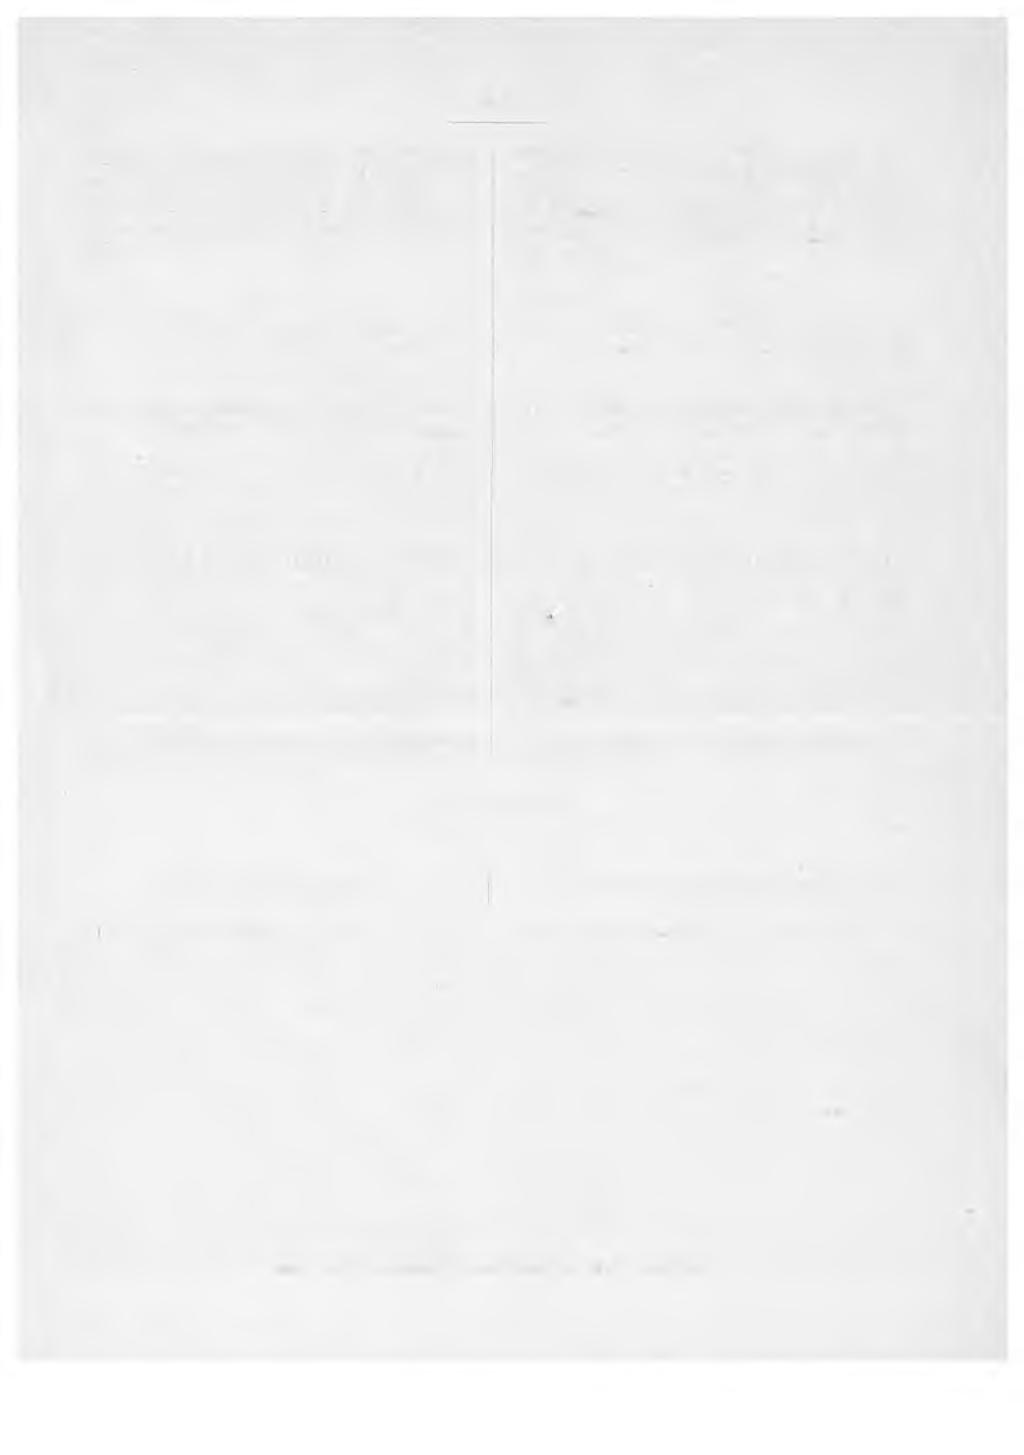 125 11 :n 2 monr.n mukaan Armollisessa julistuksessa helmikuun 7 päivältä 1888 ilmoitetaan postitoimistoille seuraava Postiliallituksen joulukuulla antama kirjoitus.